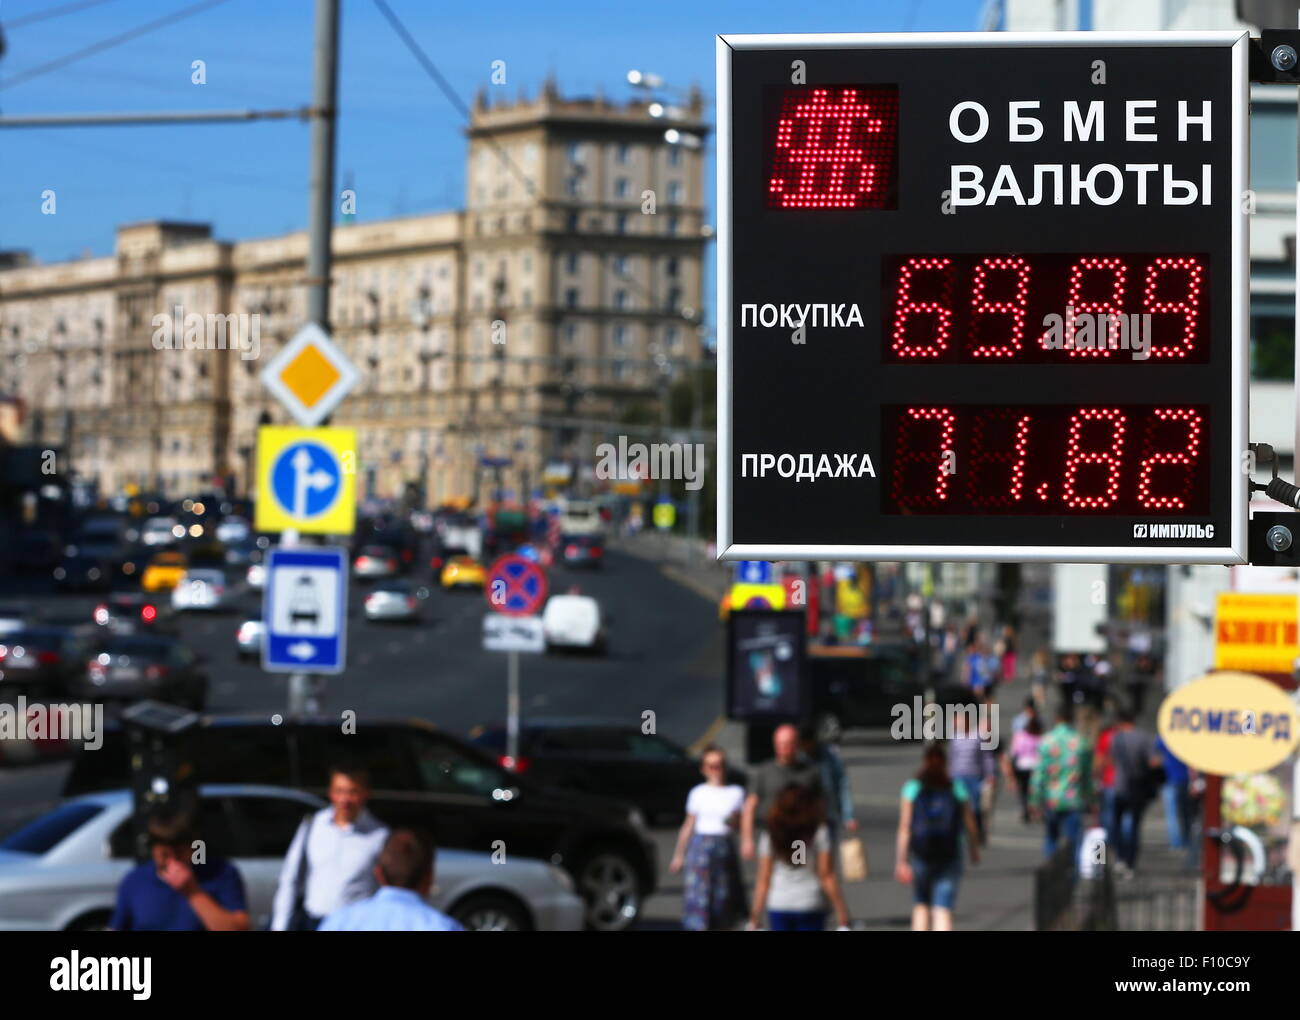 Обмен валюты московская улица litecoin deposit